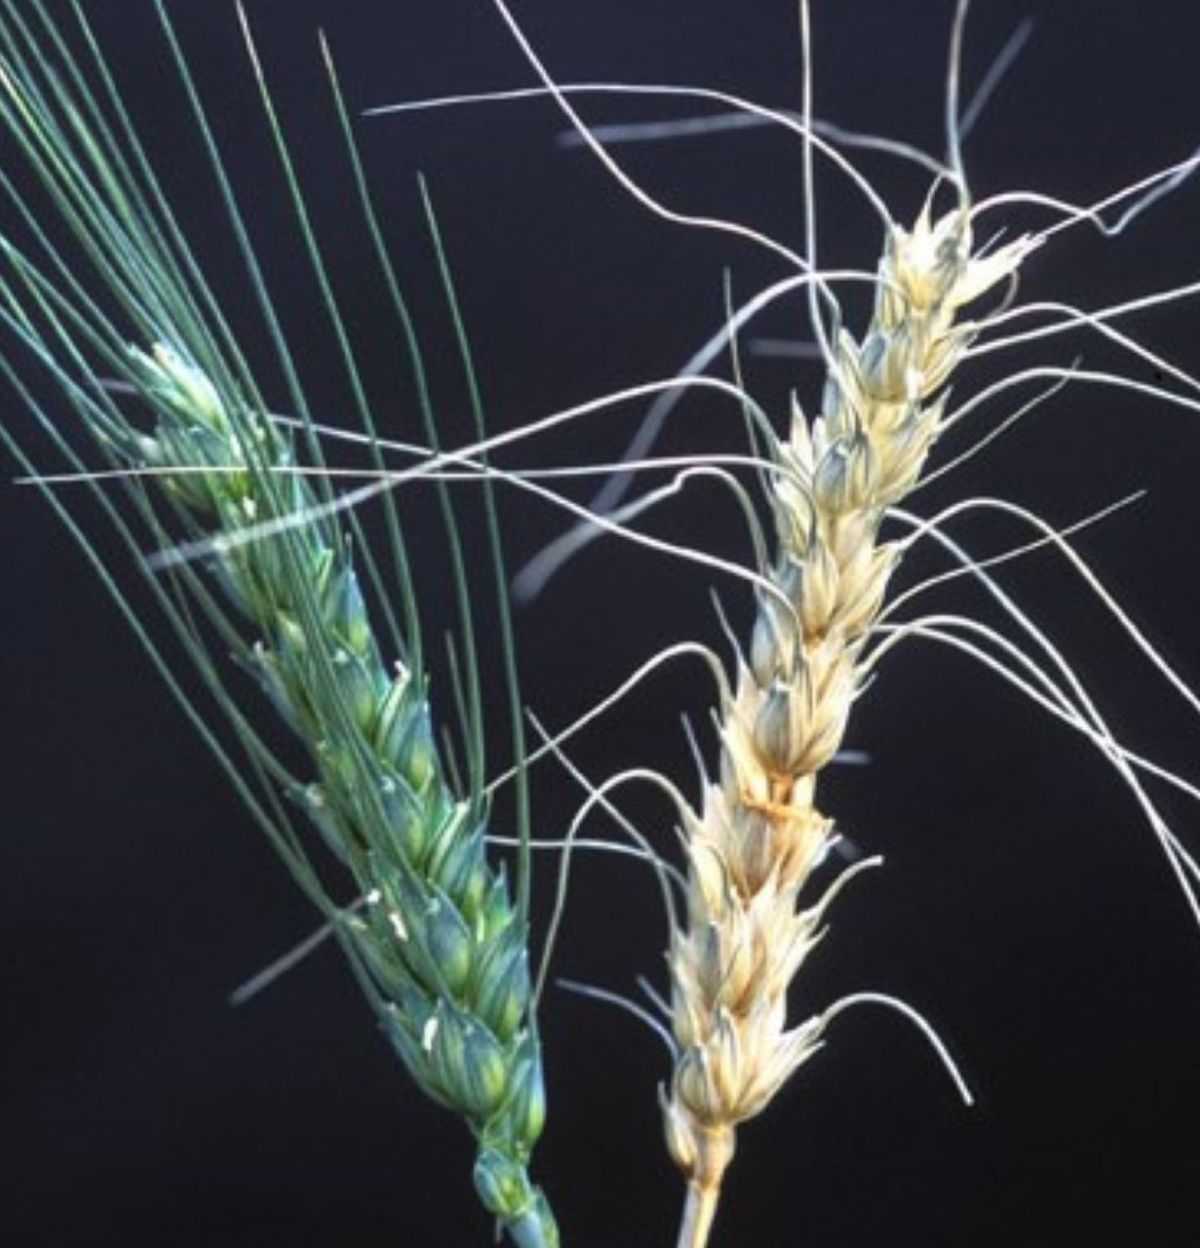 RNAs sollen chemische Pflanzenschutzmittel ersetzen, um Pilzkrankheiten wie Fusariosen nachhaltig zu bekämpfen. Hier im Bild: Eine gesunde Getreide-Ähre (links) im Vergleich mit einer von Fusarium graminearum befallenen Pflanze (rechts). (Bildquelle: © Wikipedia, gemeinfrei)